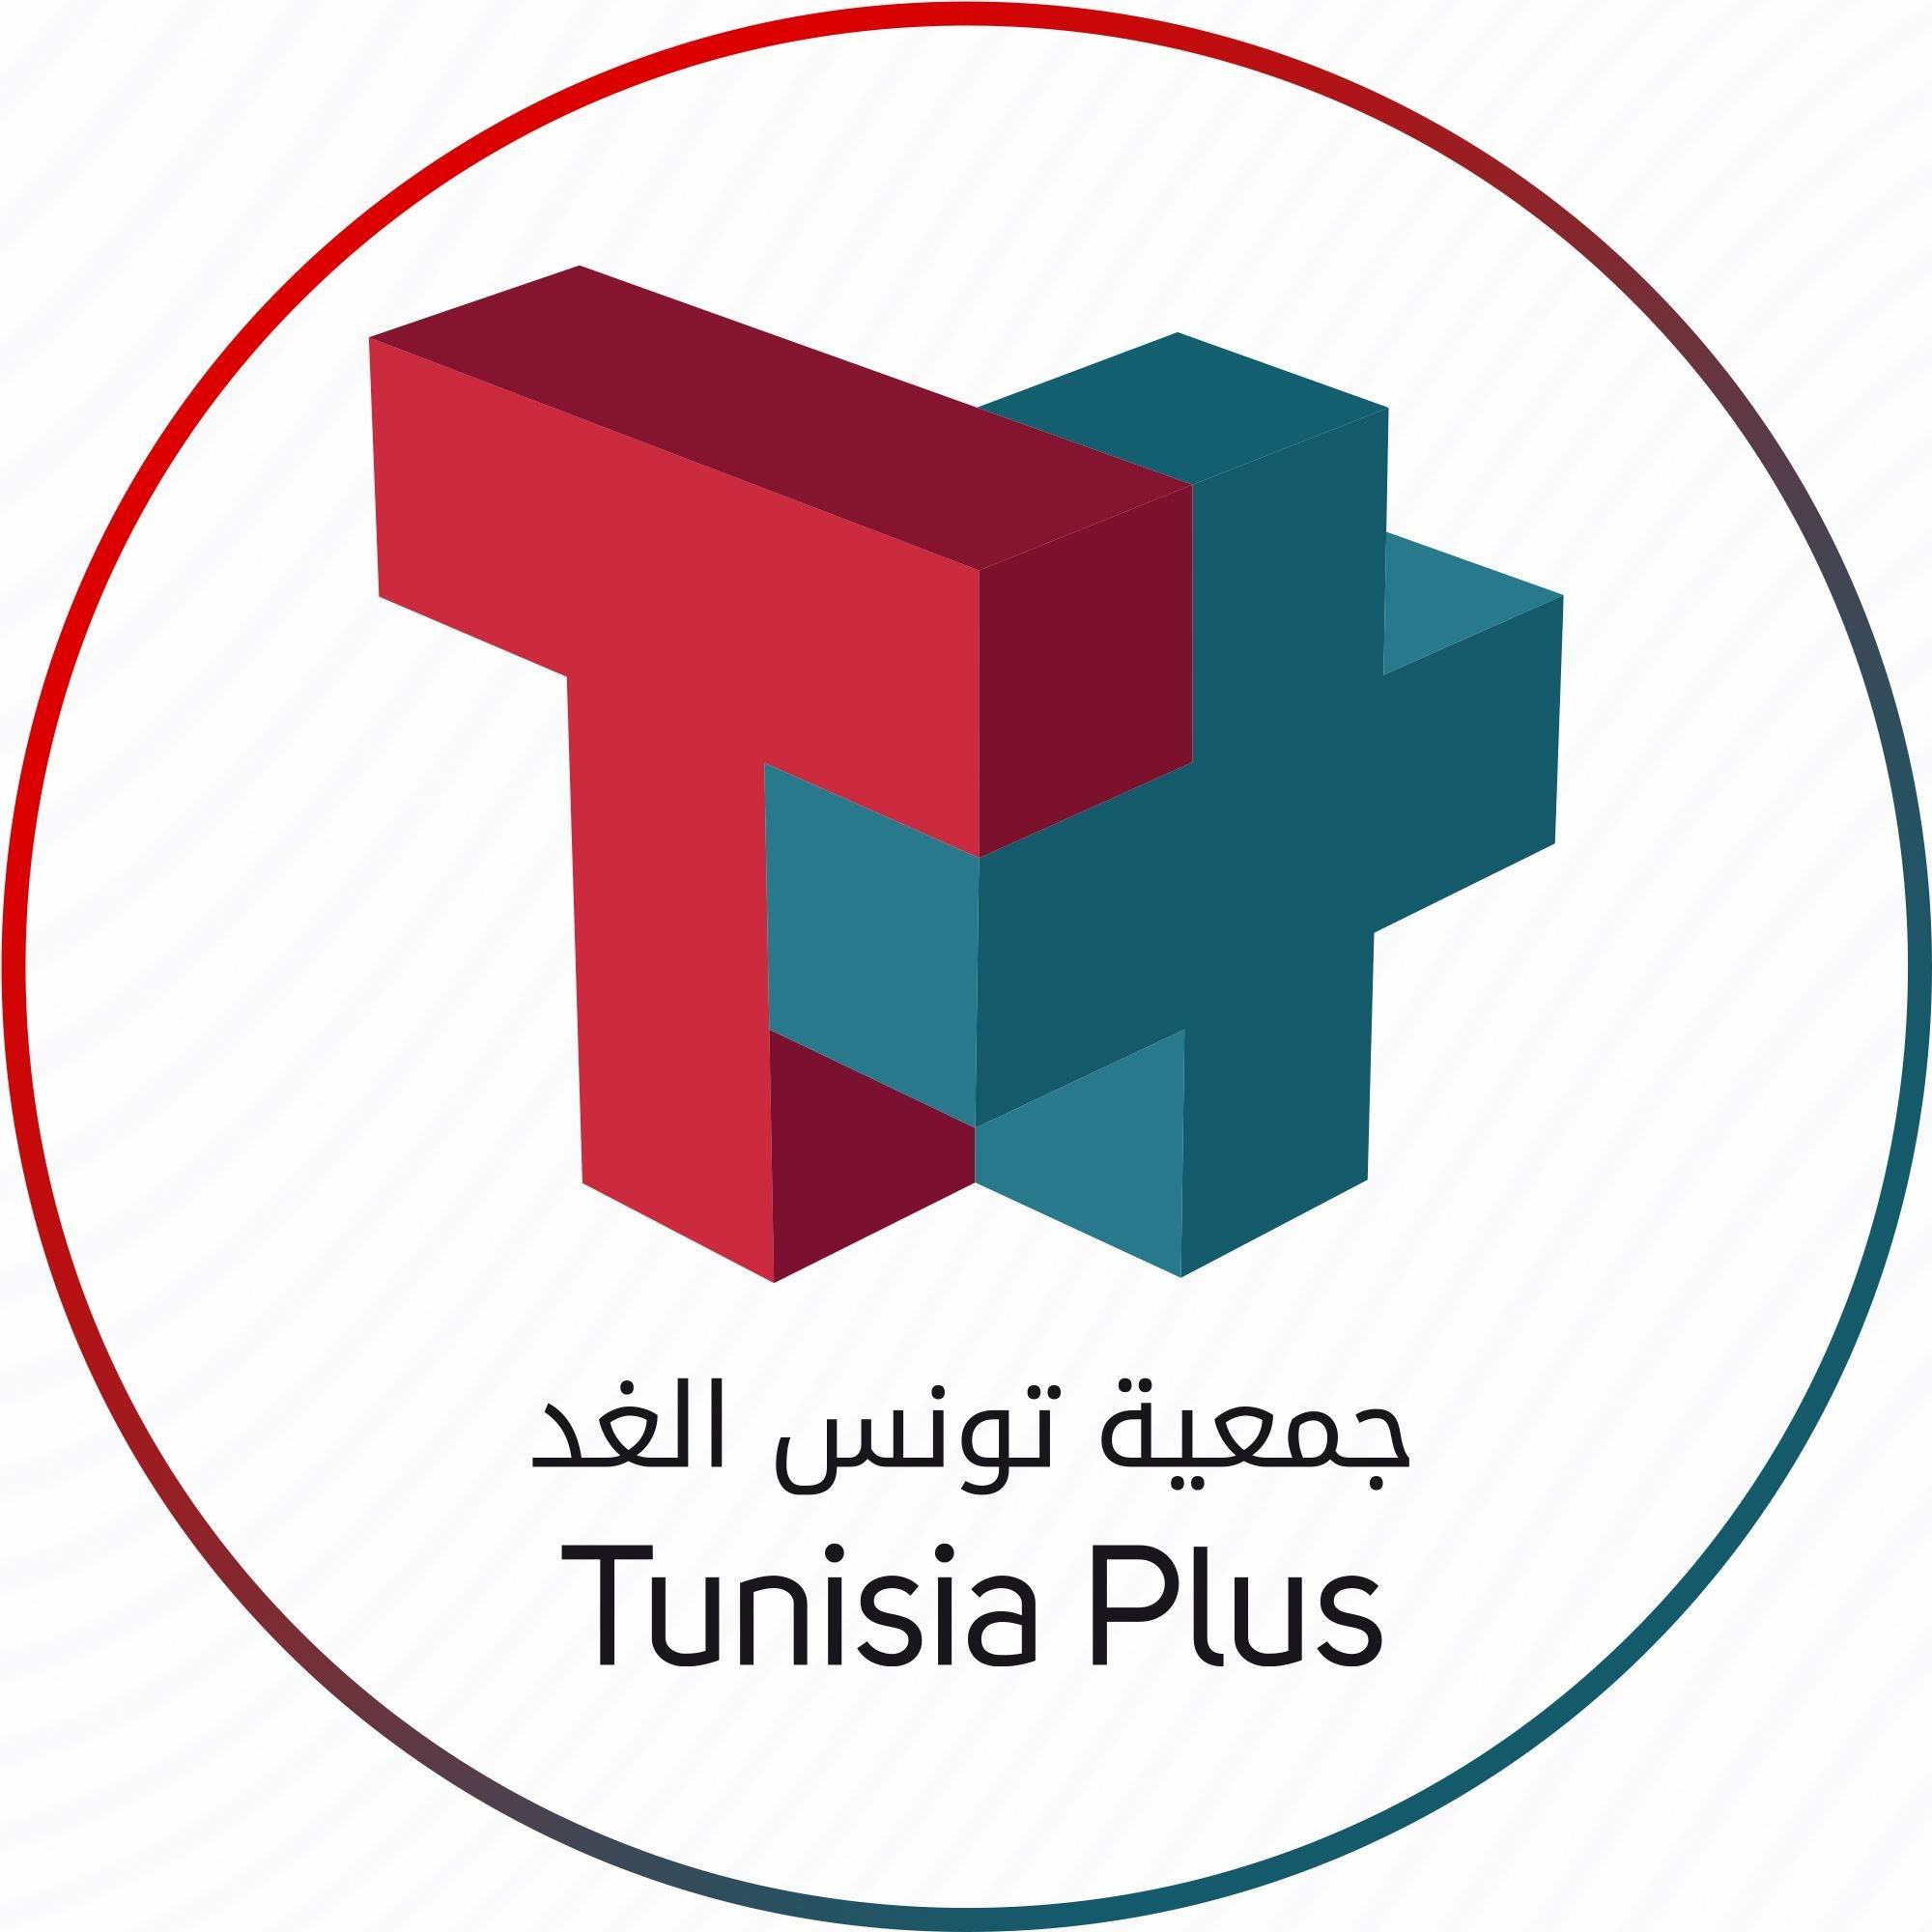 Association tunisia plus